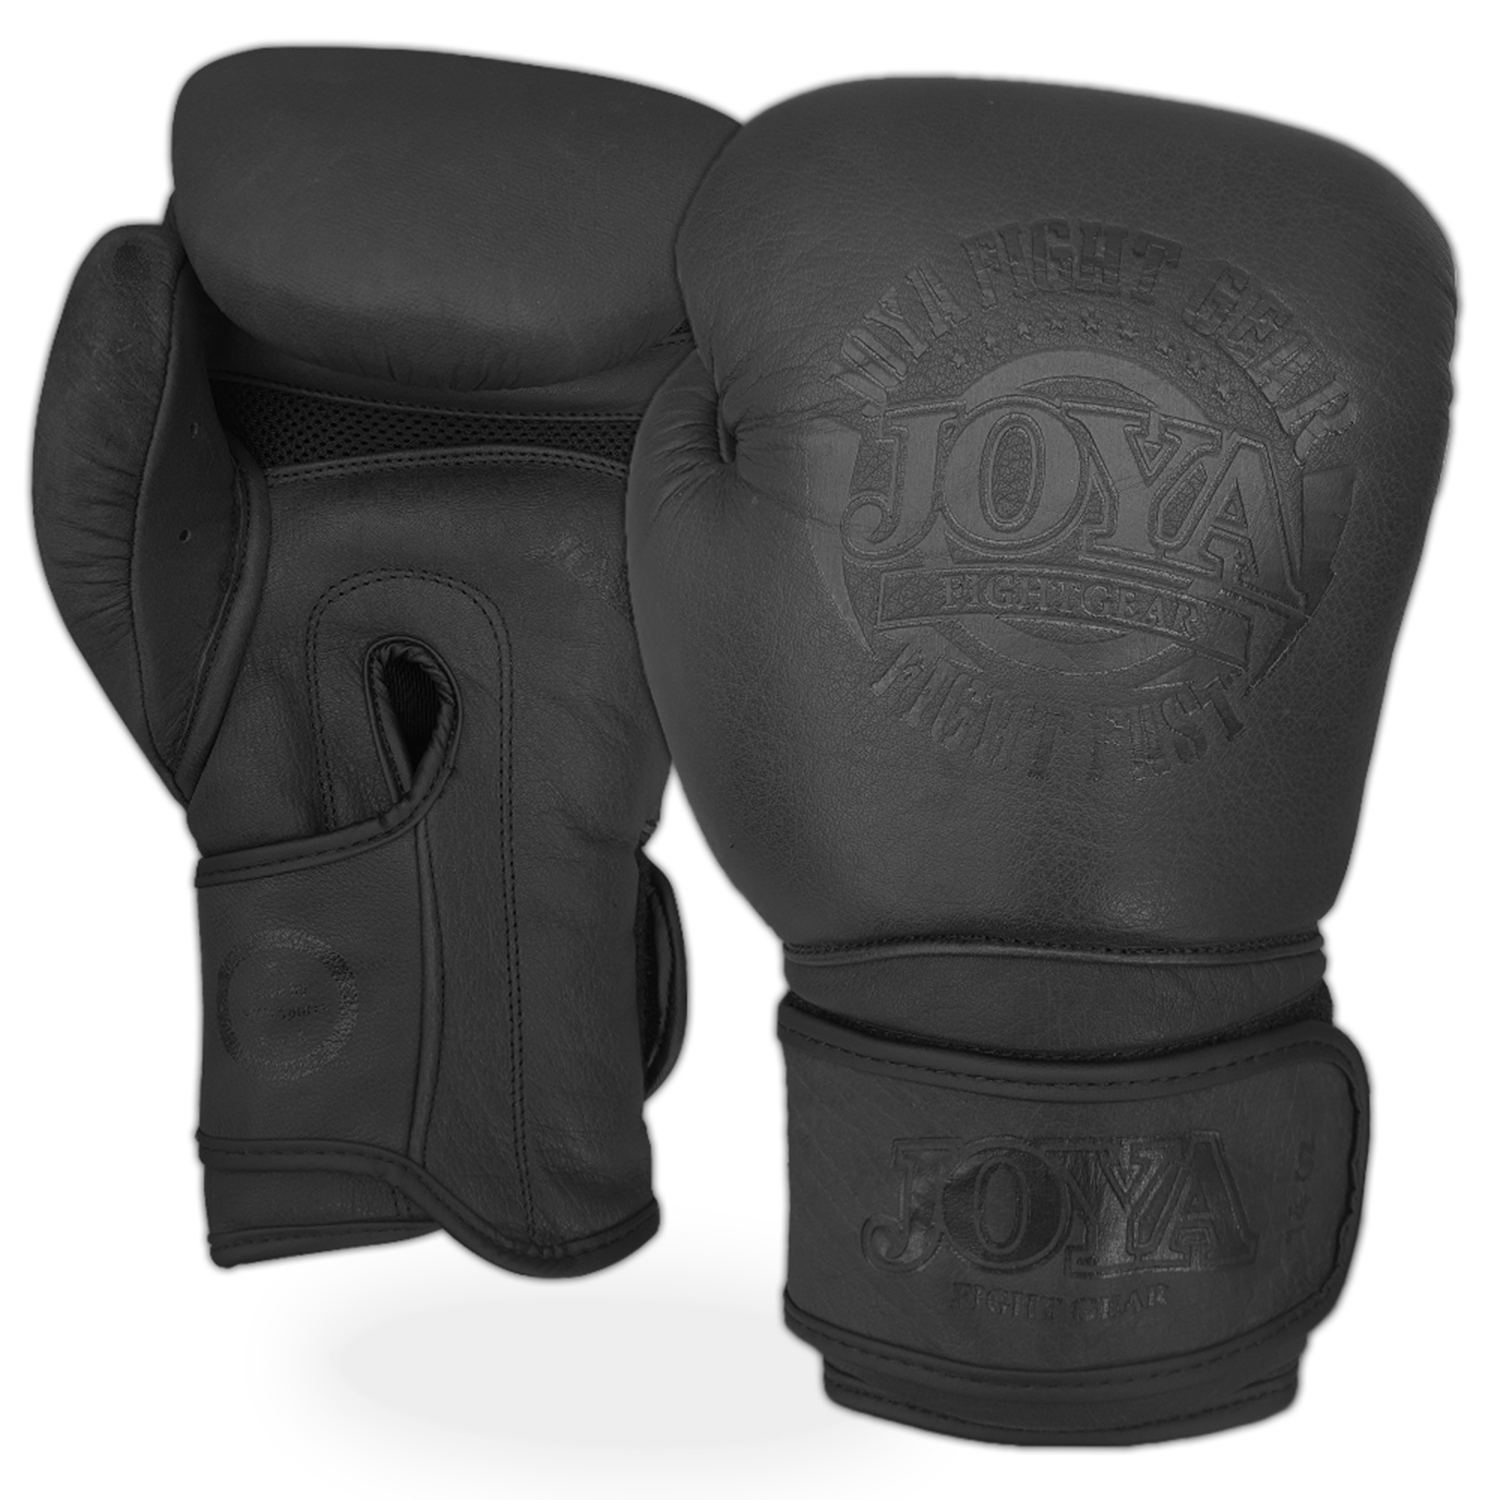 Joya Fight Fast Boxhandschuhe schwarz